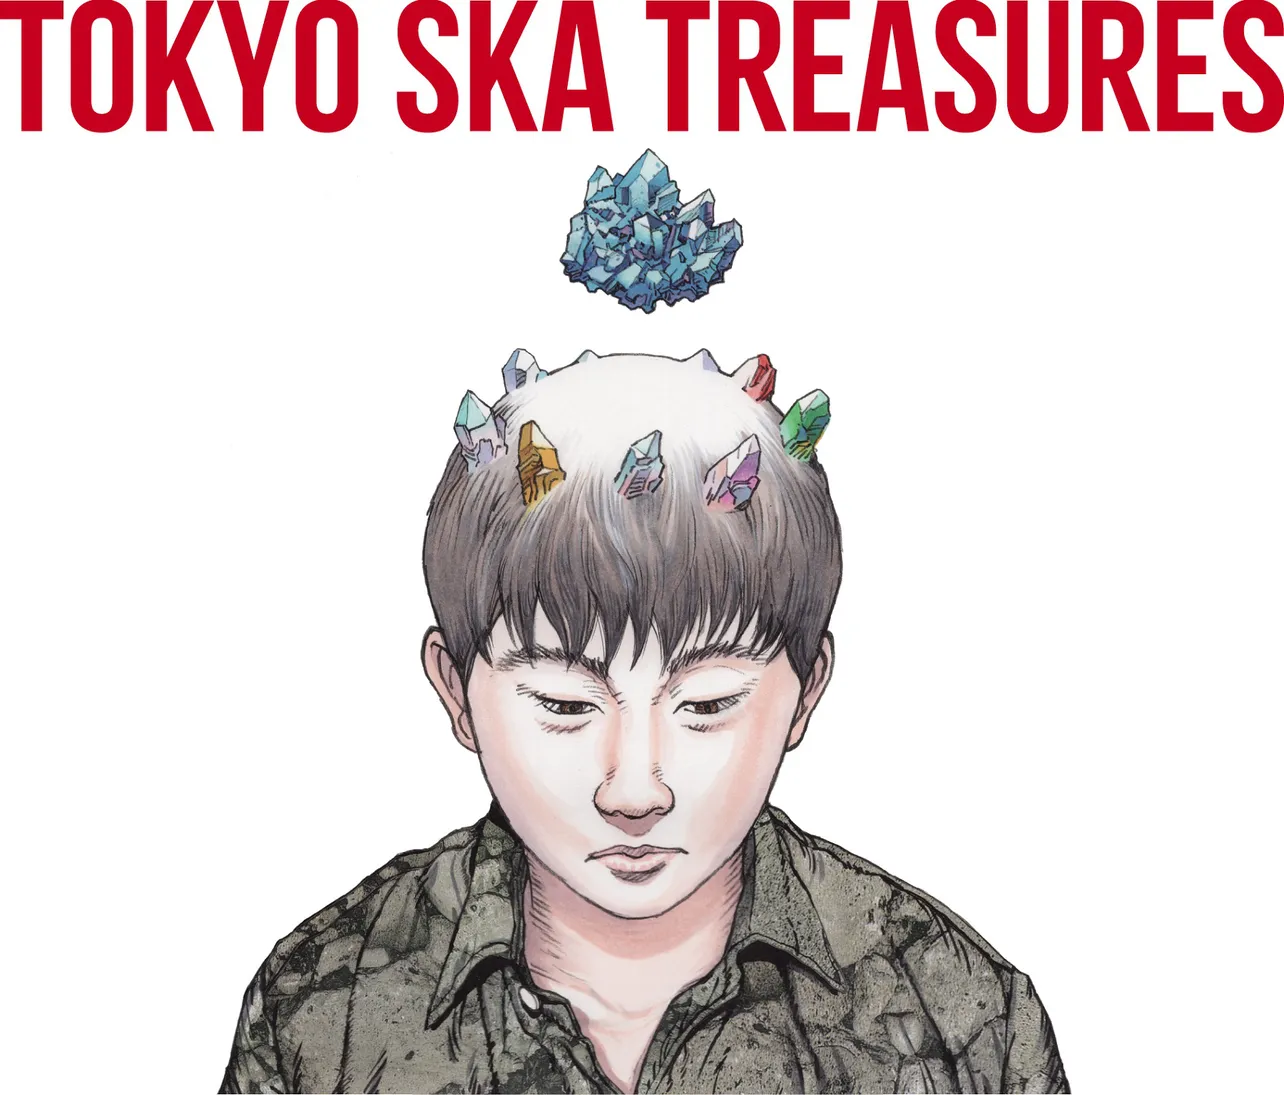 大友克洋がジャケットを手掛けたアルバム『TOKYO SKA TREASURES 〜ベスト・オブ・東京スカパラダイスオーケストラ〜 (CD ONLY盤)』